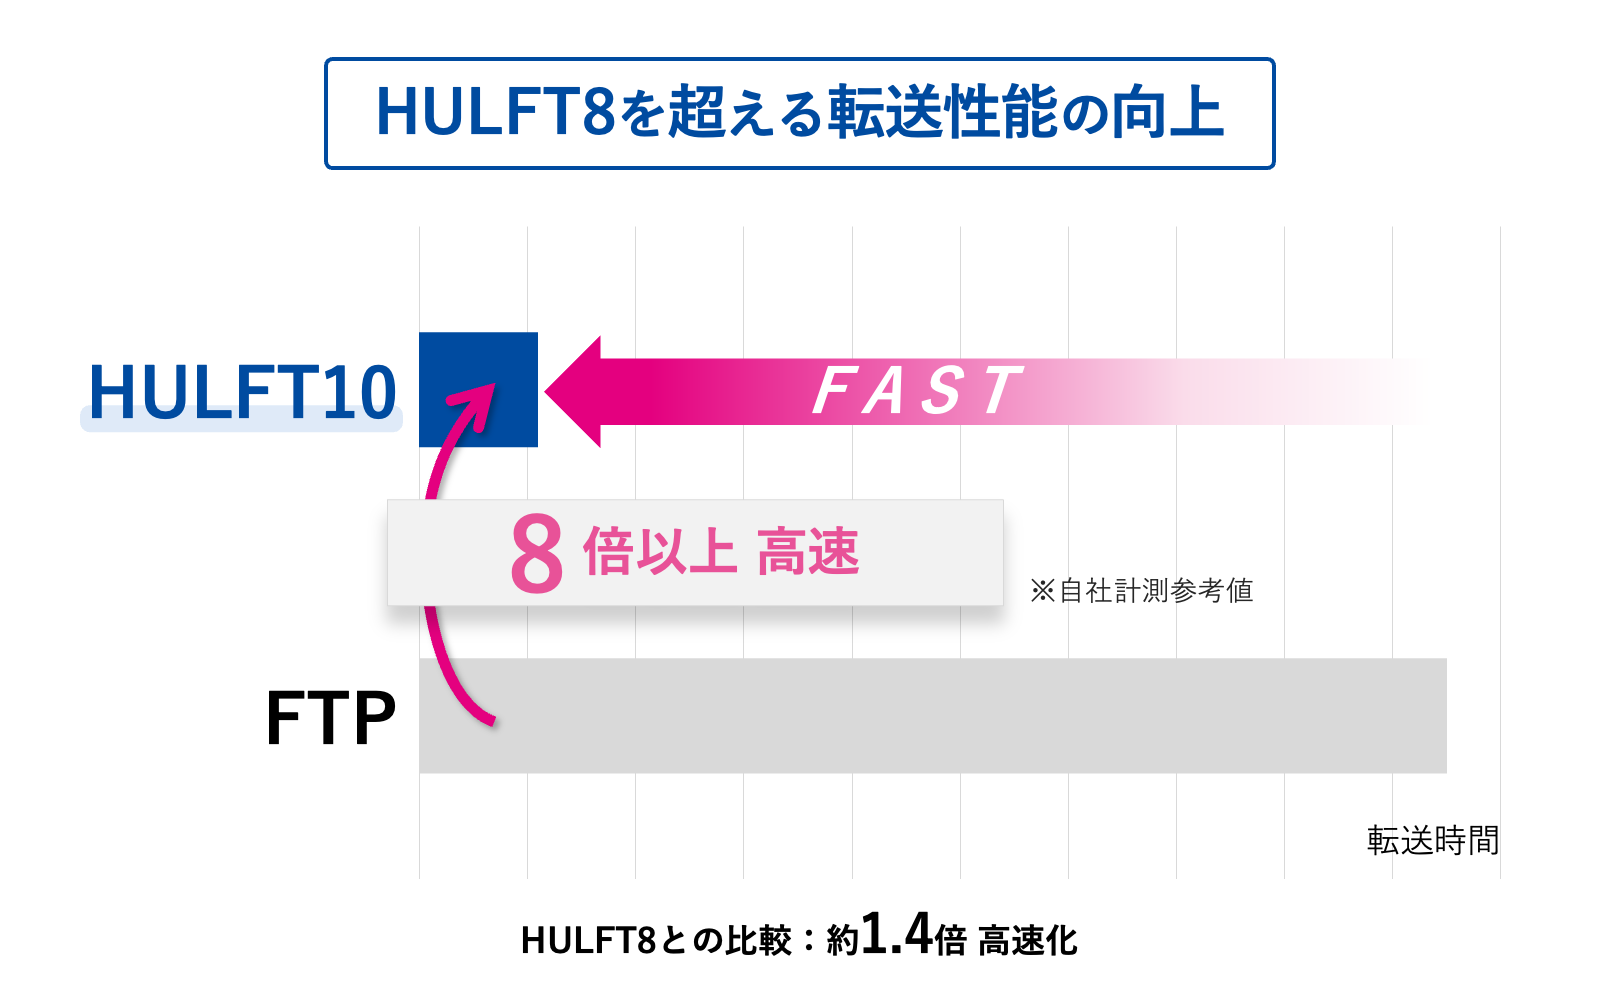 セゾンテクノロジー、FTP比8倍*の転送性能を実現した「HULFT」新バージョンの圧縮方式「Zstandard」先行体験...